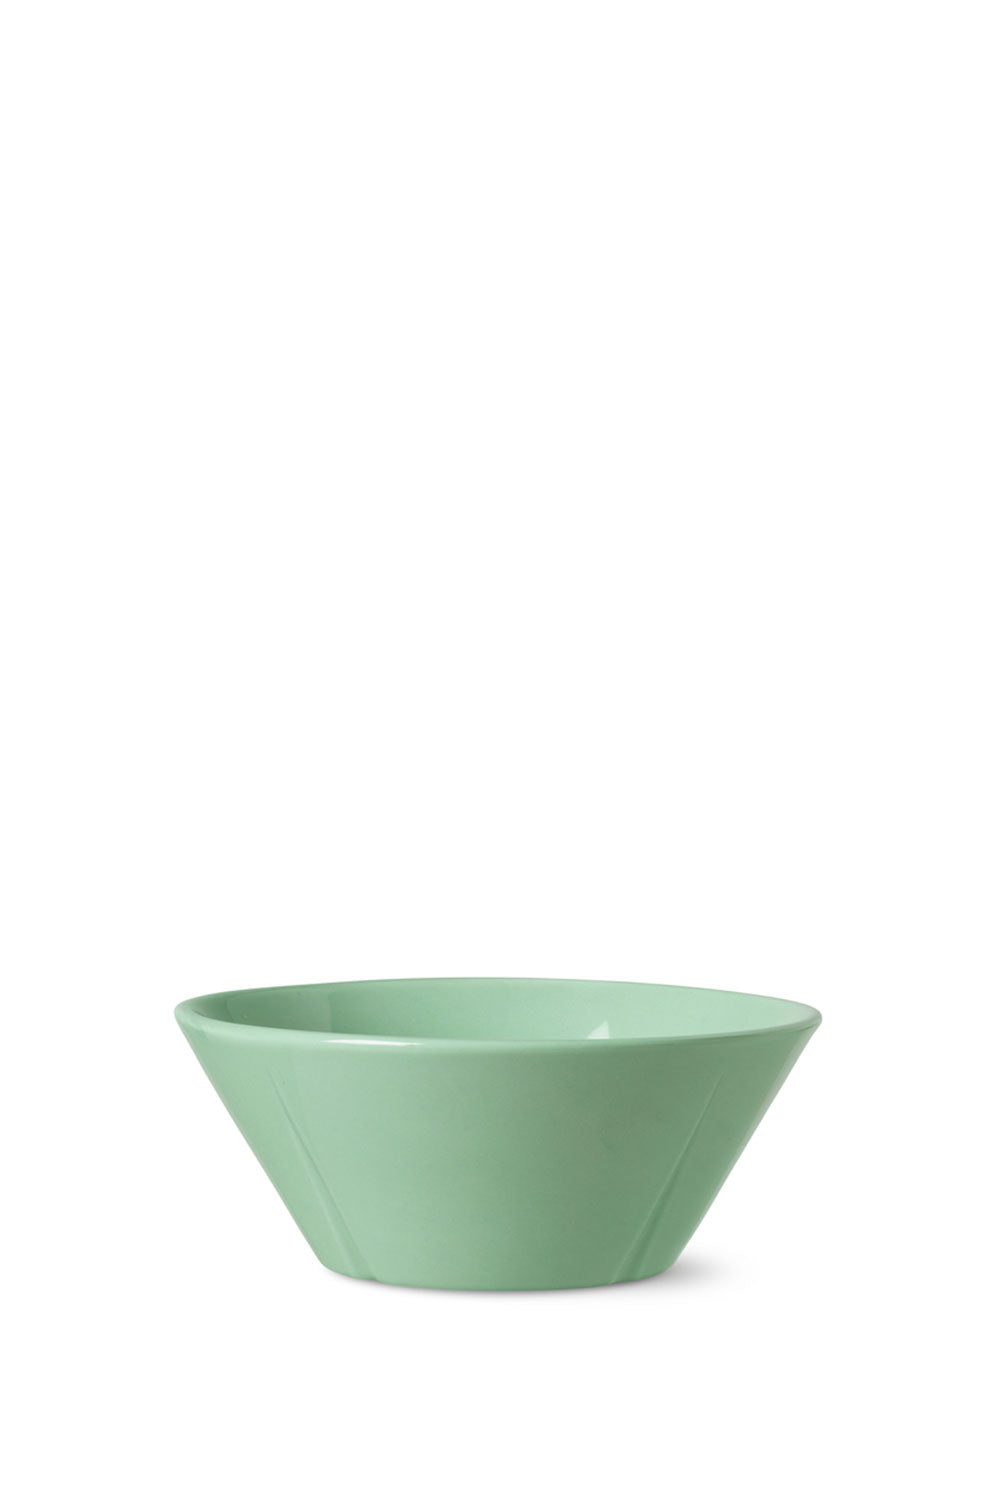 Grand Cru Bowl,15 cm, Mint